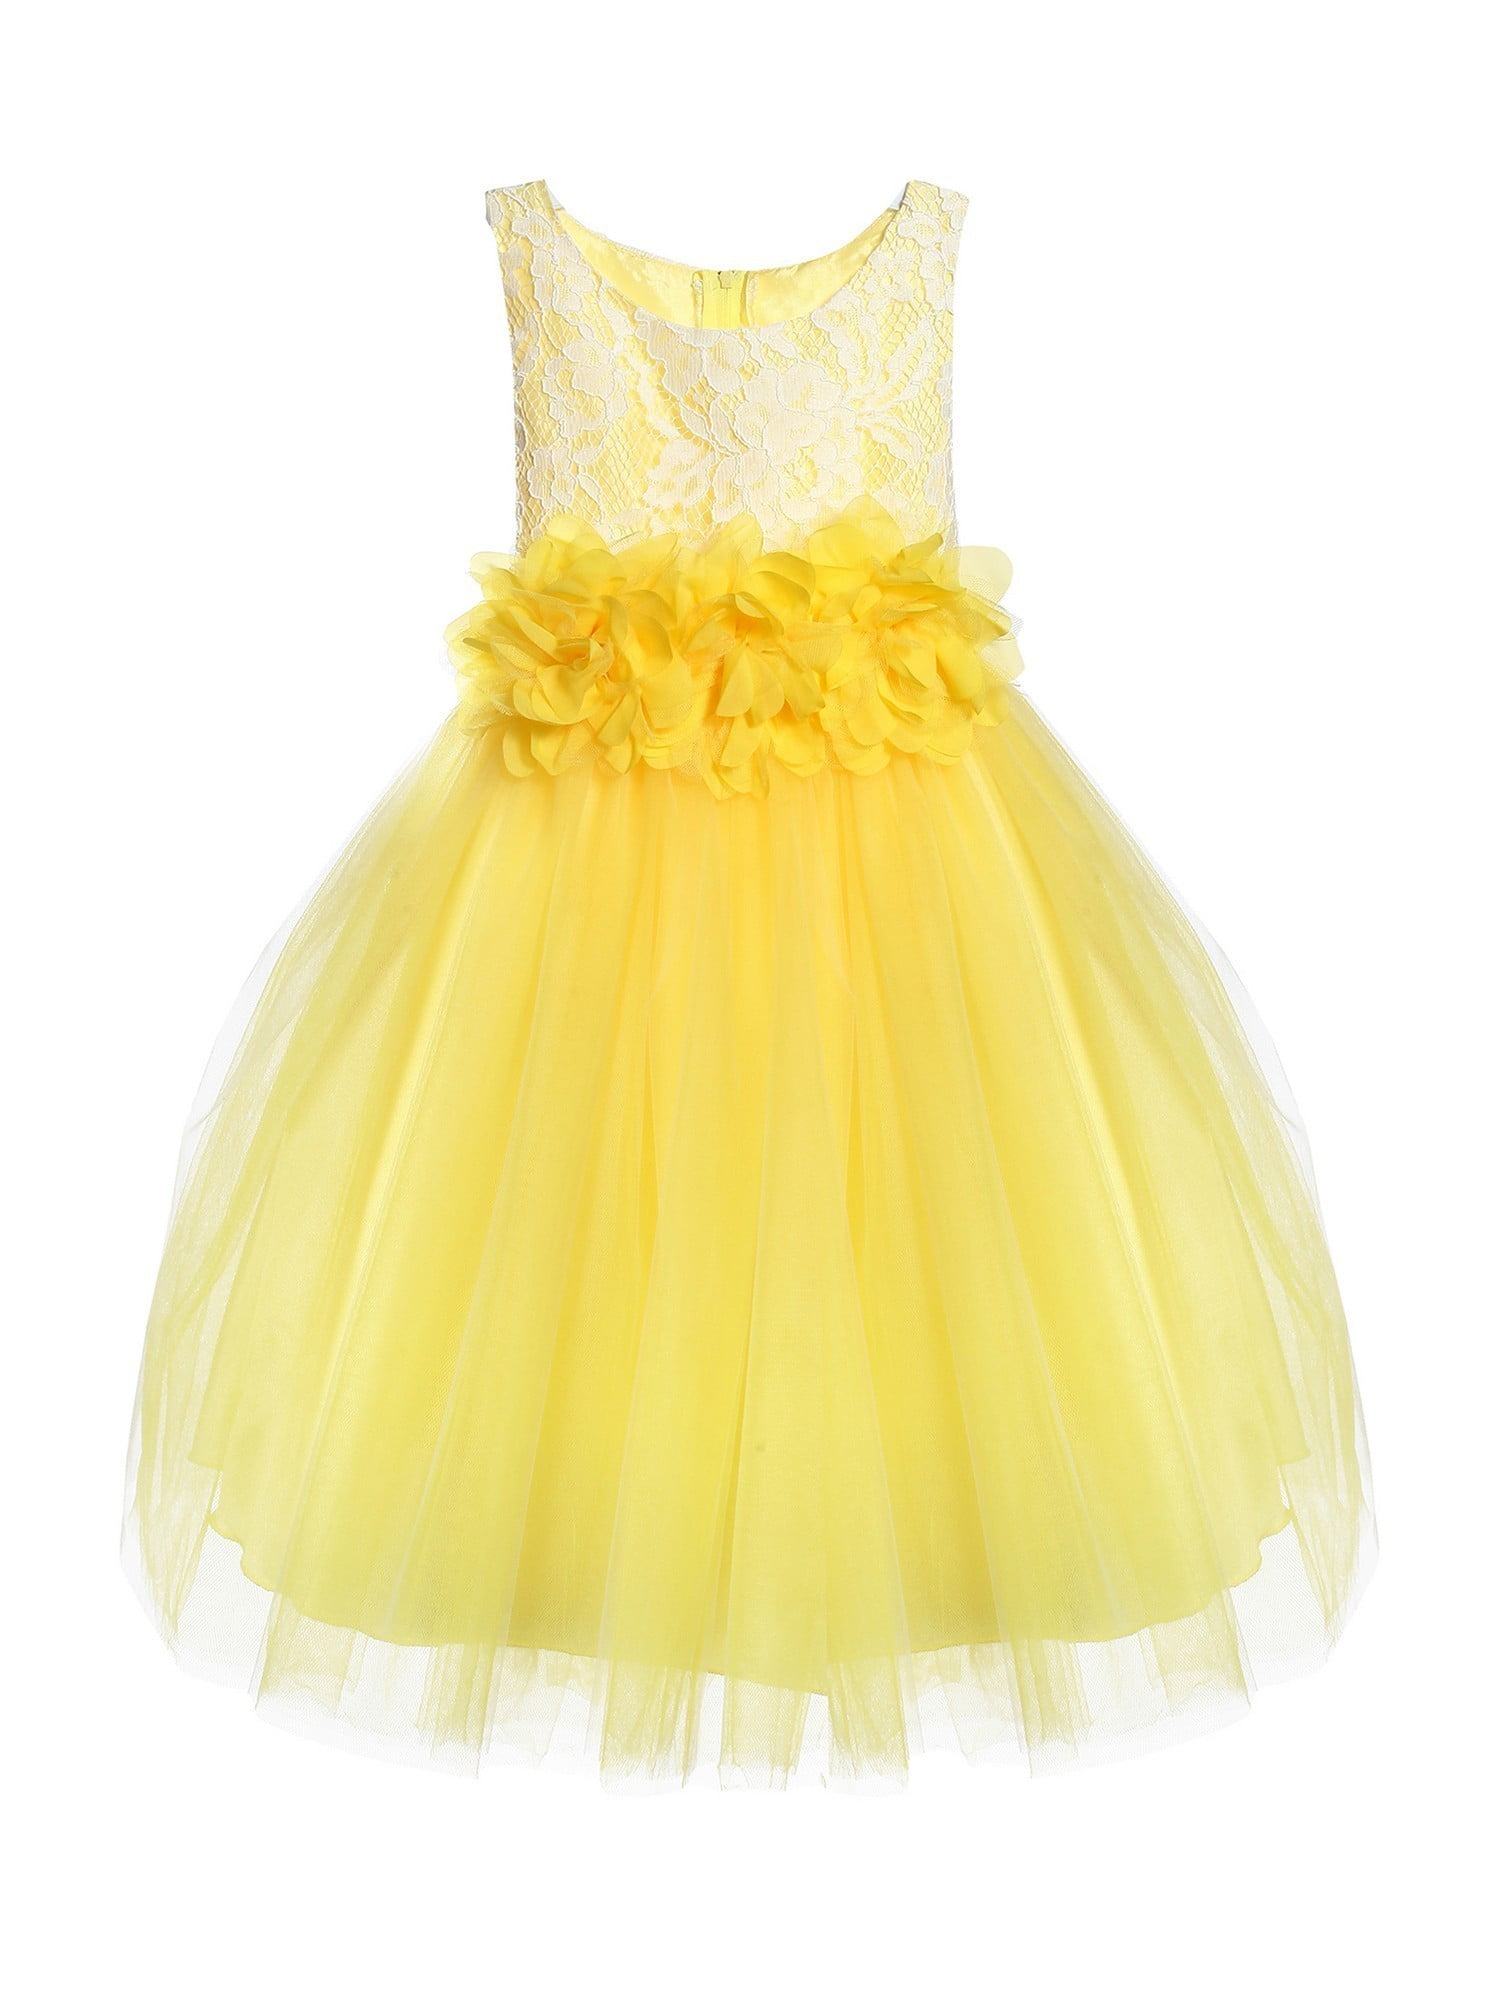 girls yellow bridesmaid dress